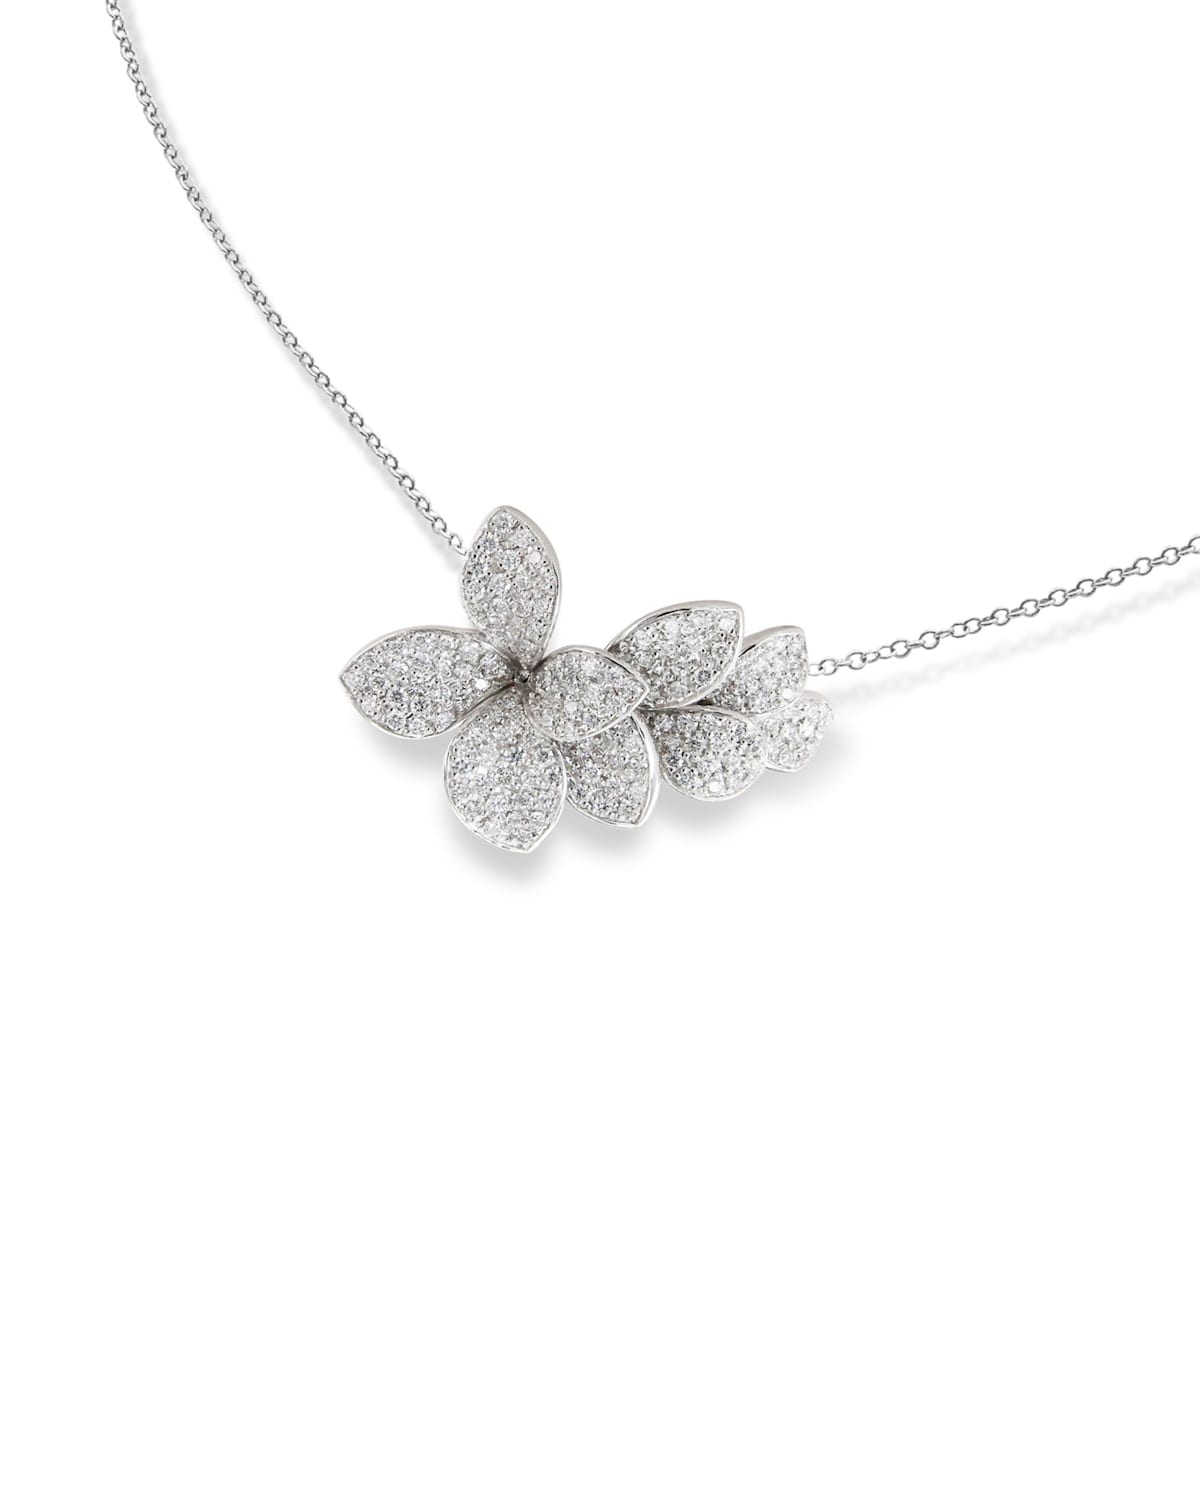 Shop Pasquale Bruni Giardini Segreti 18k White Gold Short Diamond Pendant Necklace